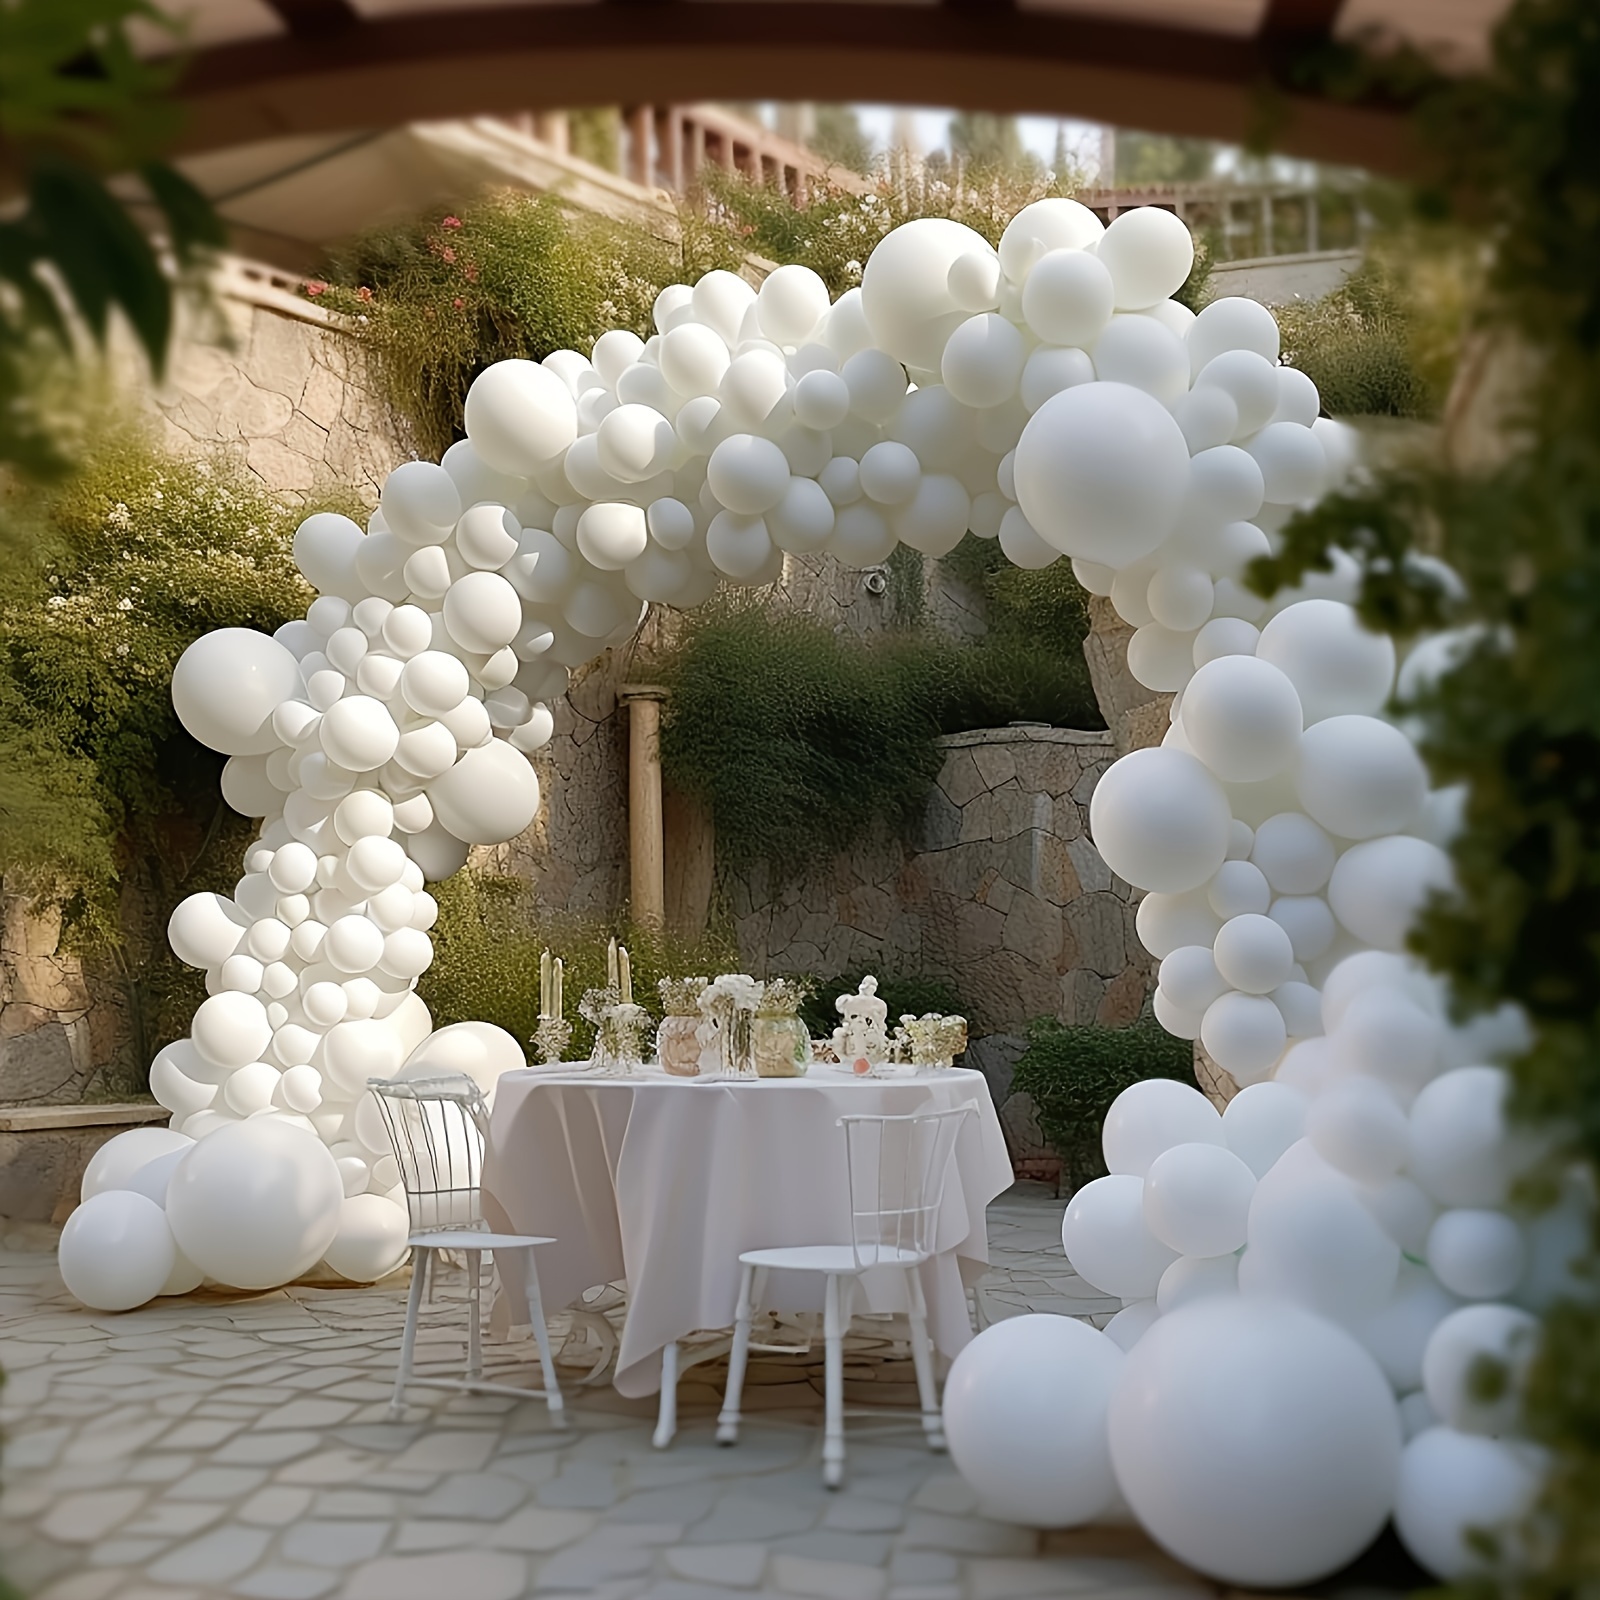 Kit de arco de guirnalda de globos blancos y negros, paquete de 120 globos  de látex mate negro blanco para baby shower, cumpleaños, boda, graduación